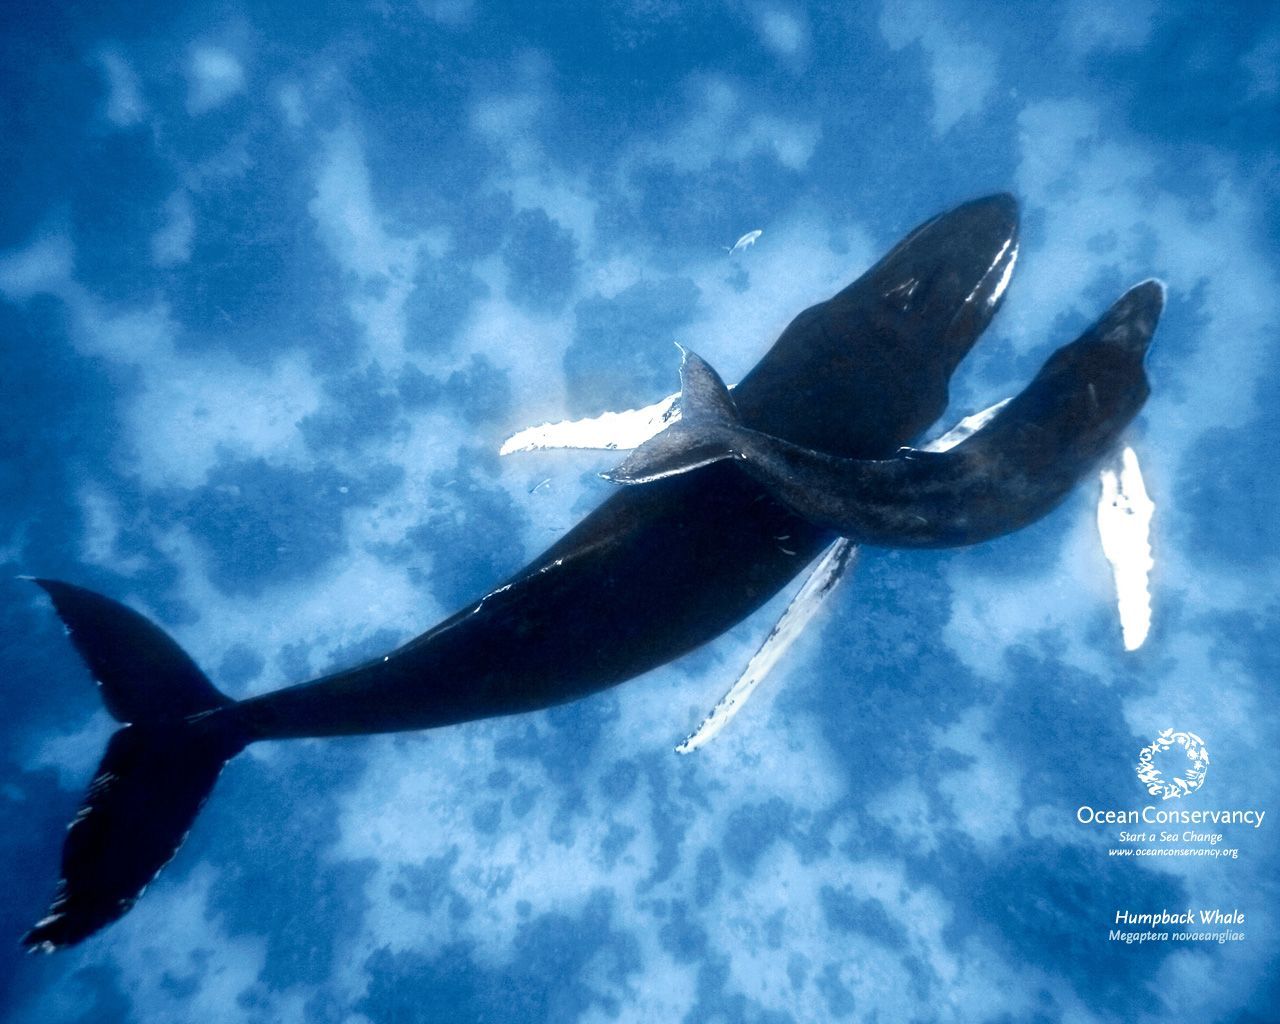 Ocean Conservancy: Desktop Wallpaper